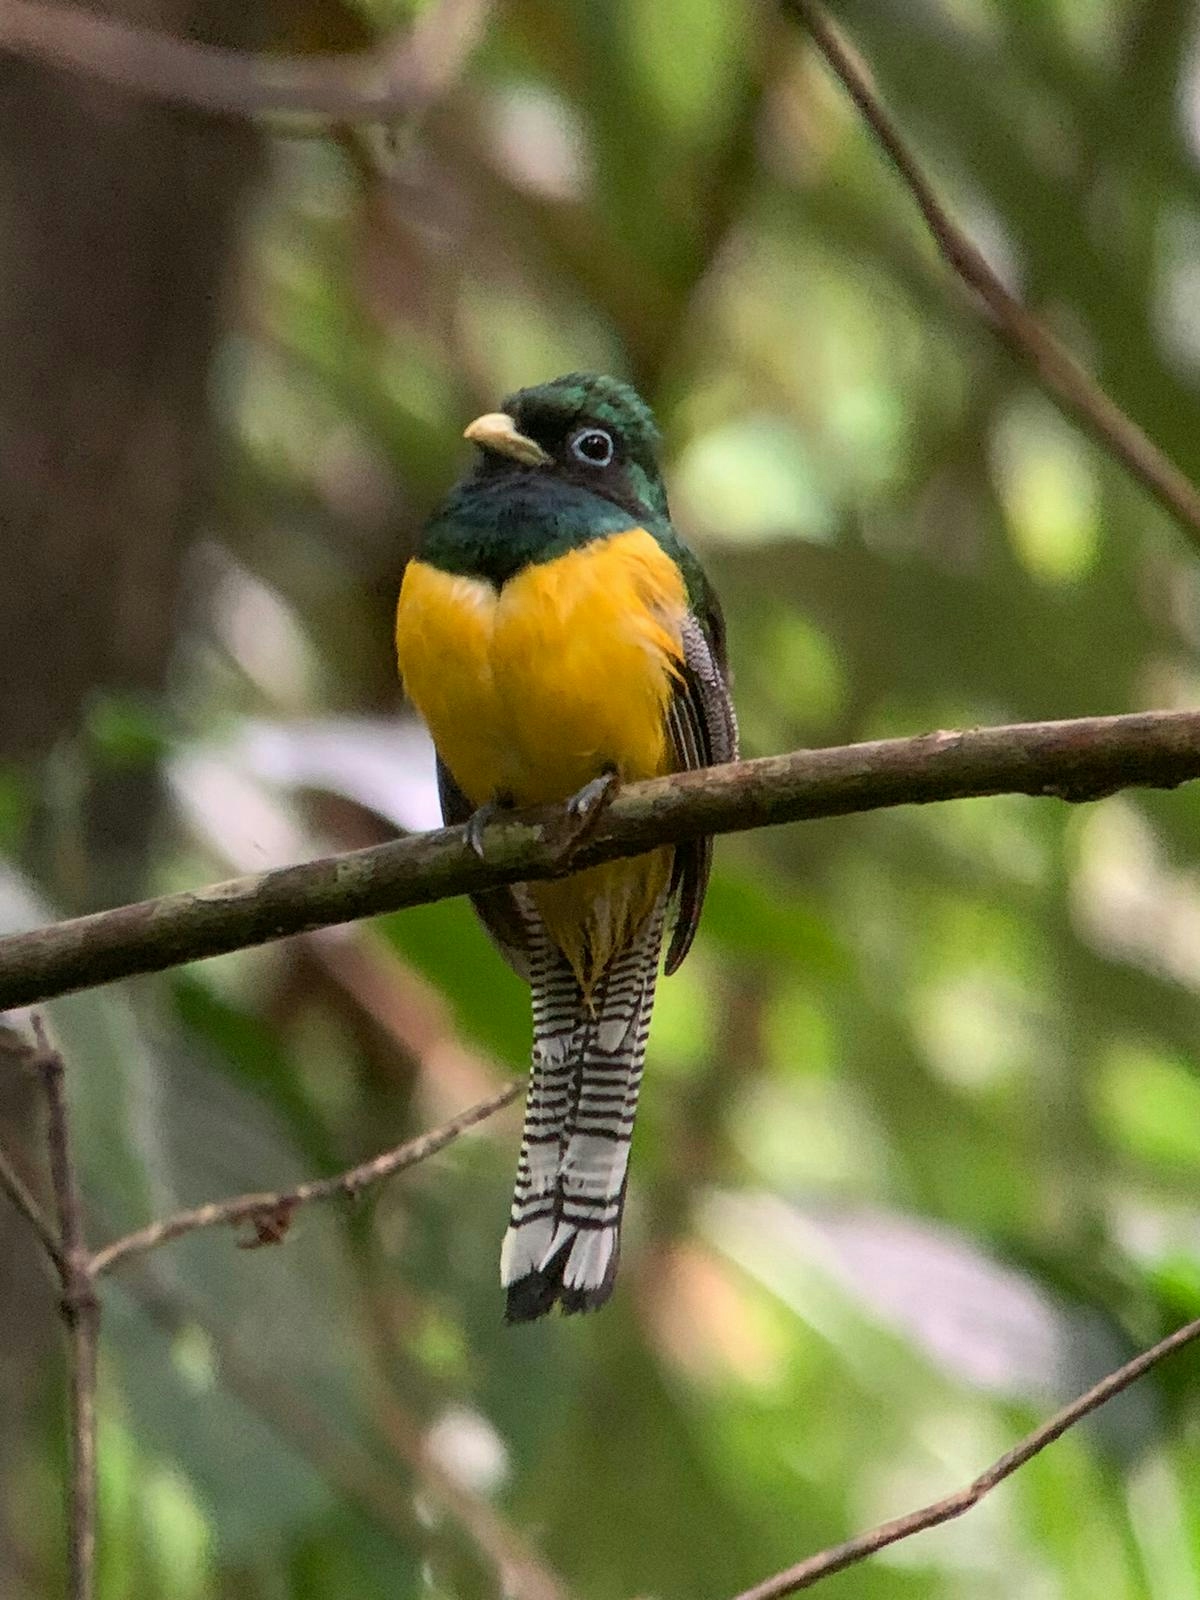 Tropical Bird taken at Costa Rica